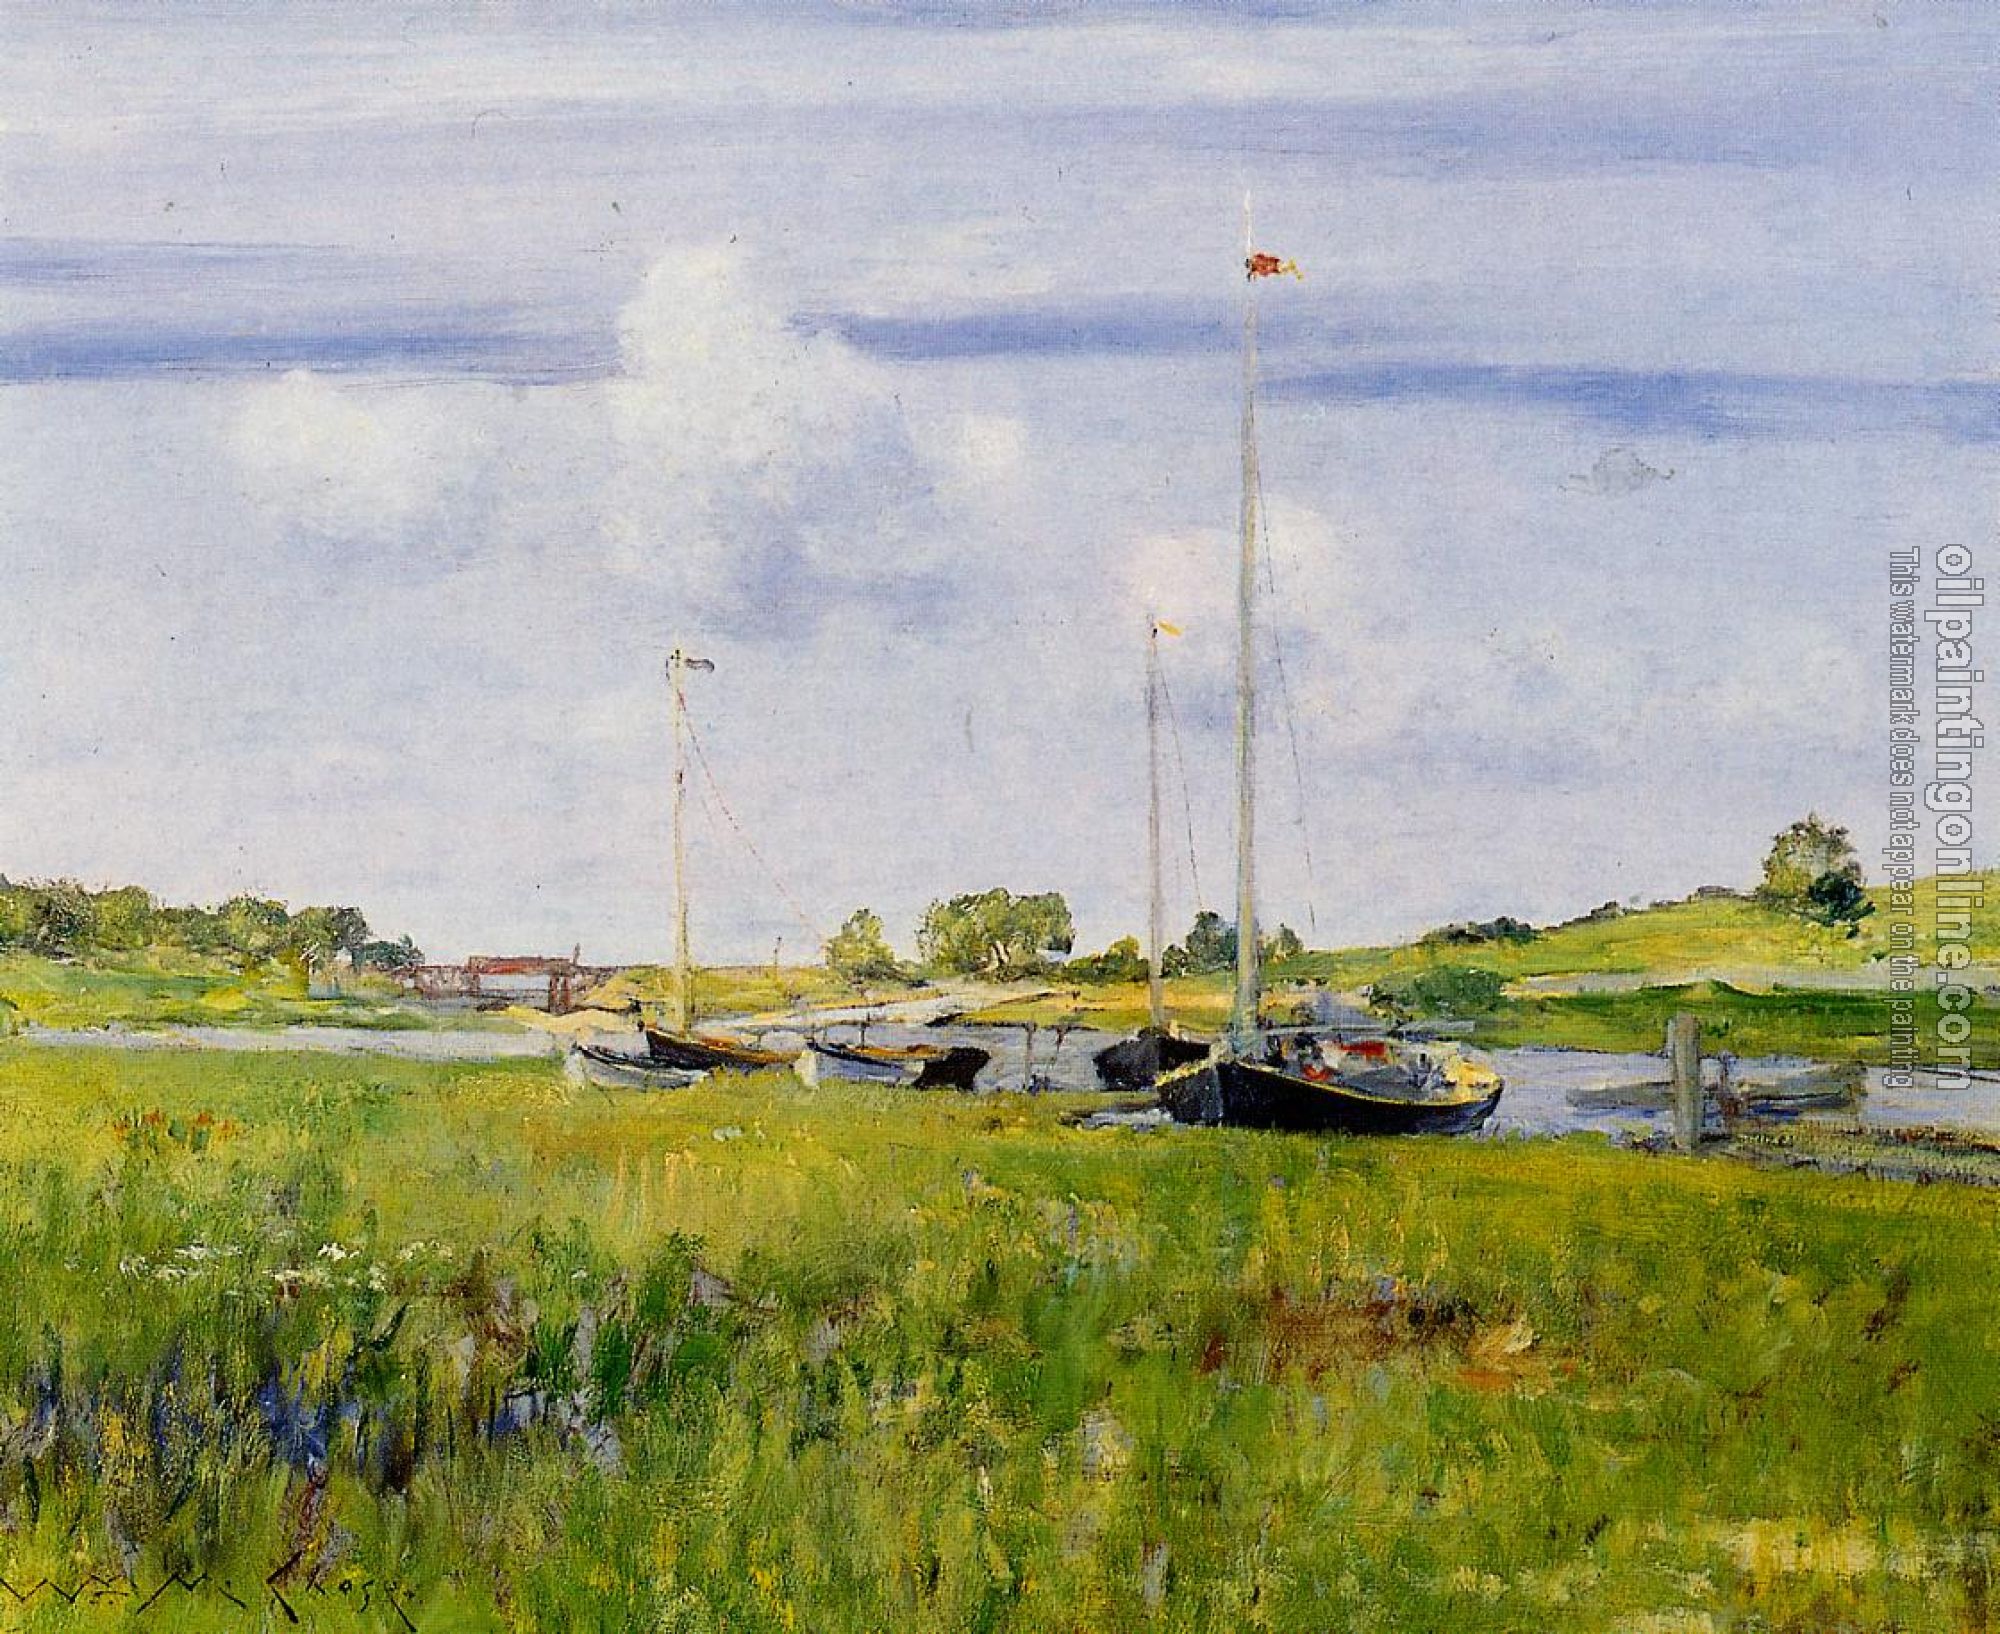 Chase, William Merritt - At the Boat Landing